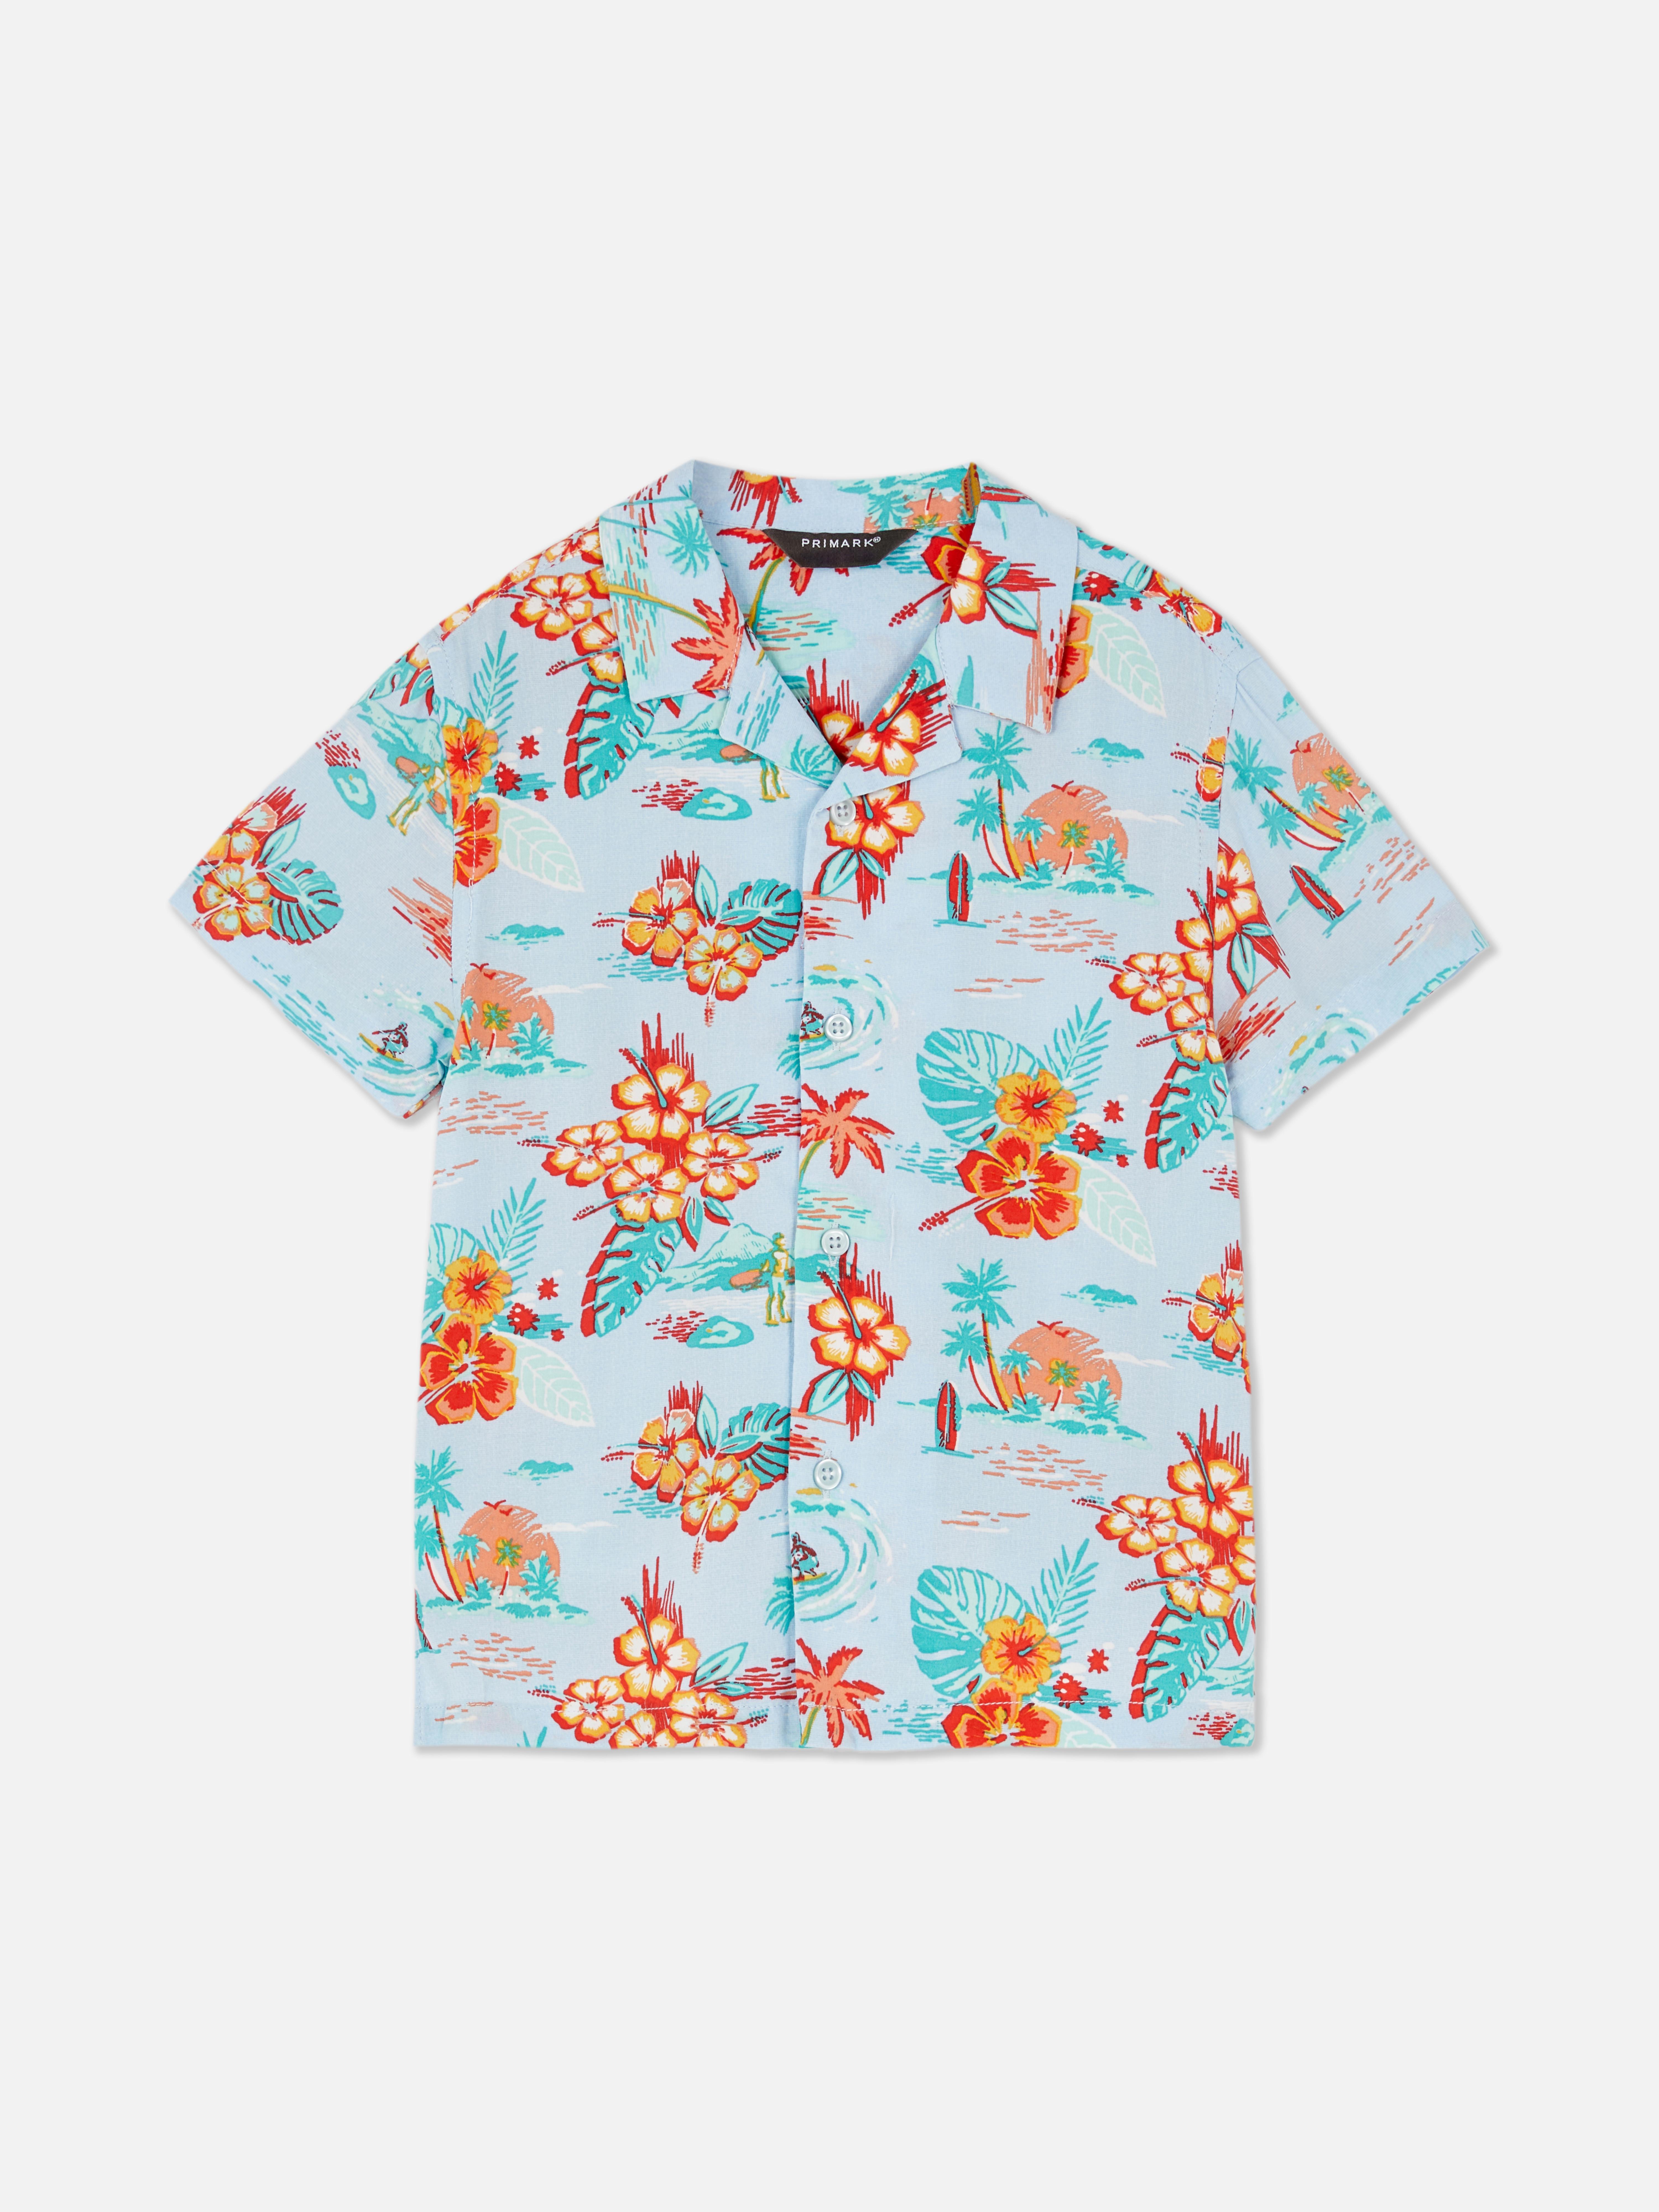 Camisa manga curta estampado tropical